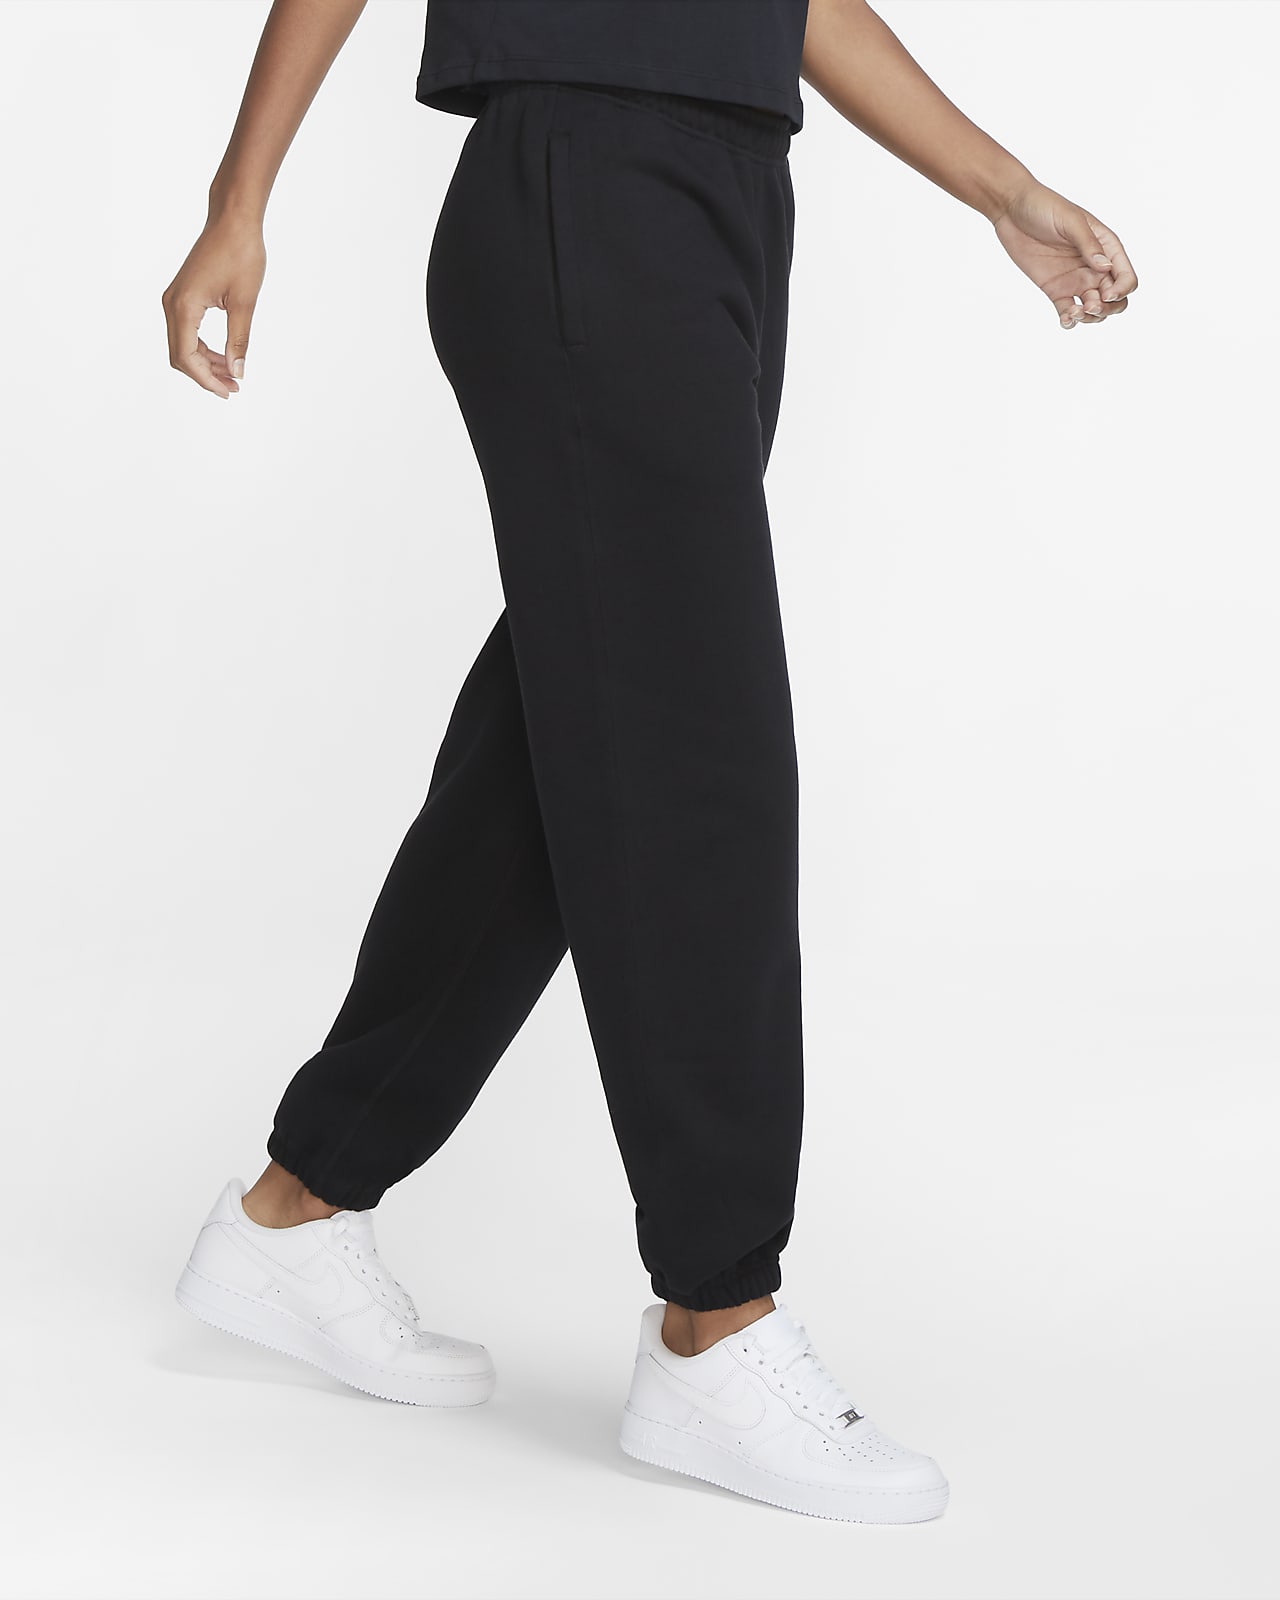 NikeLab Women's Fleece Trousers